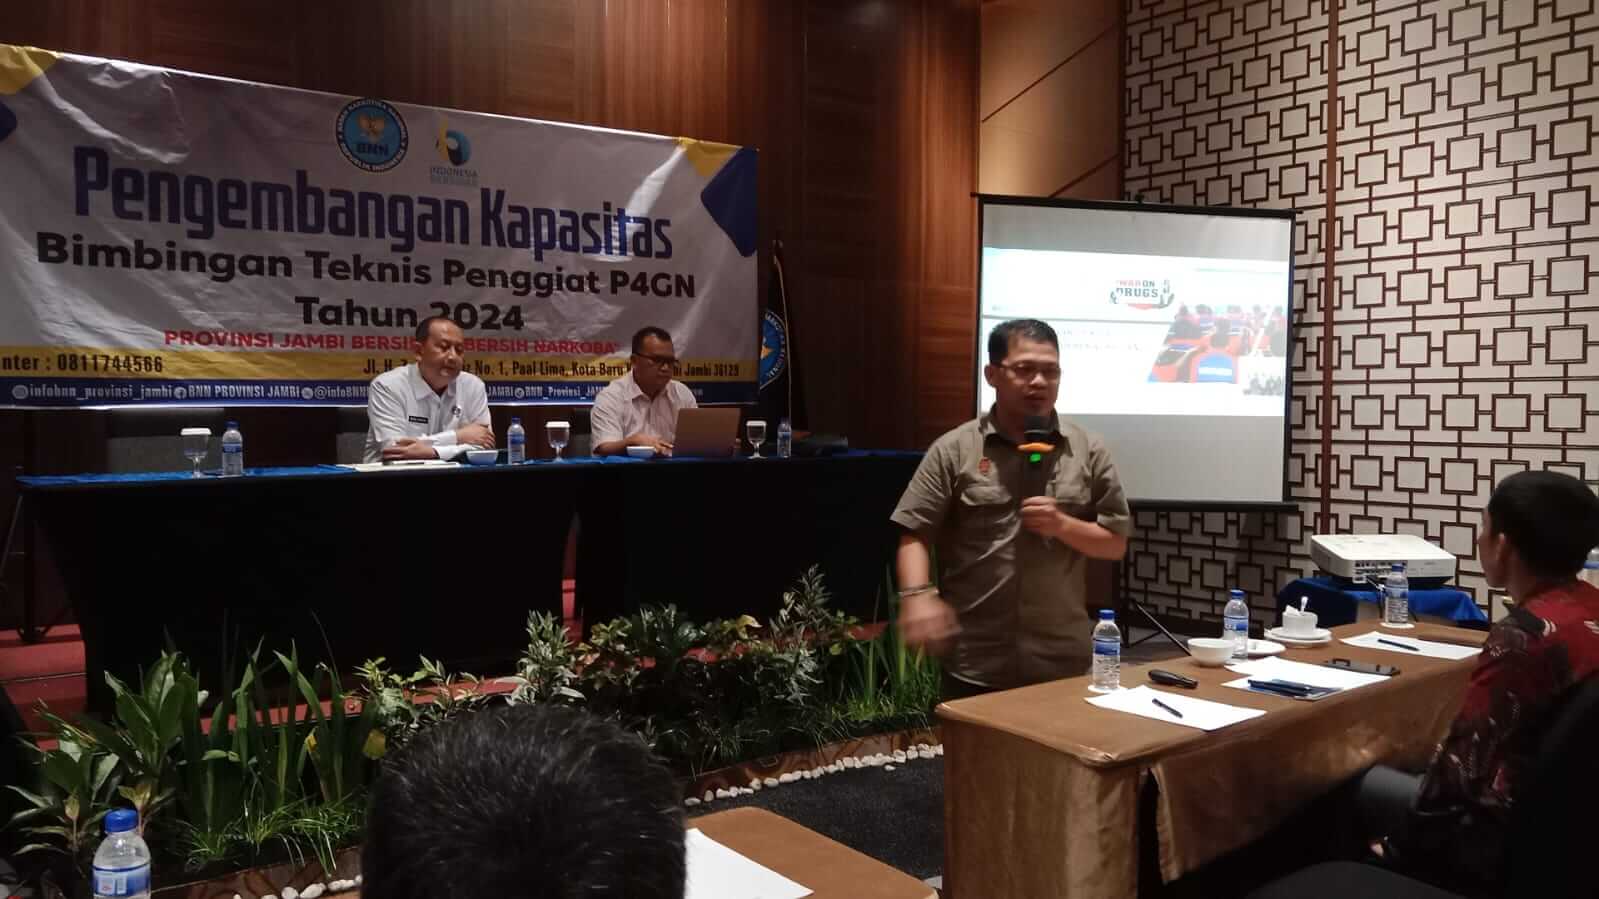 Komisi Informasi Dukung   Penggiat P4GN yang Digelar BNN Provinsi Jambi 